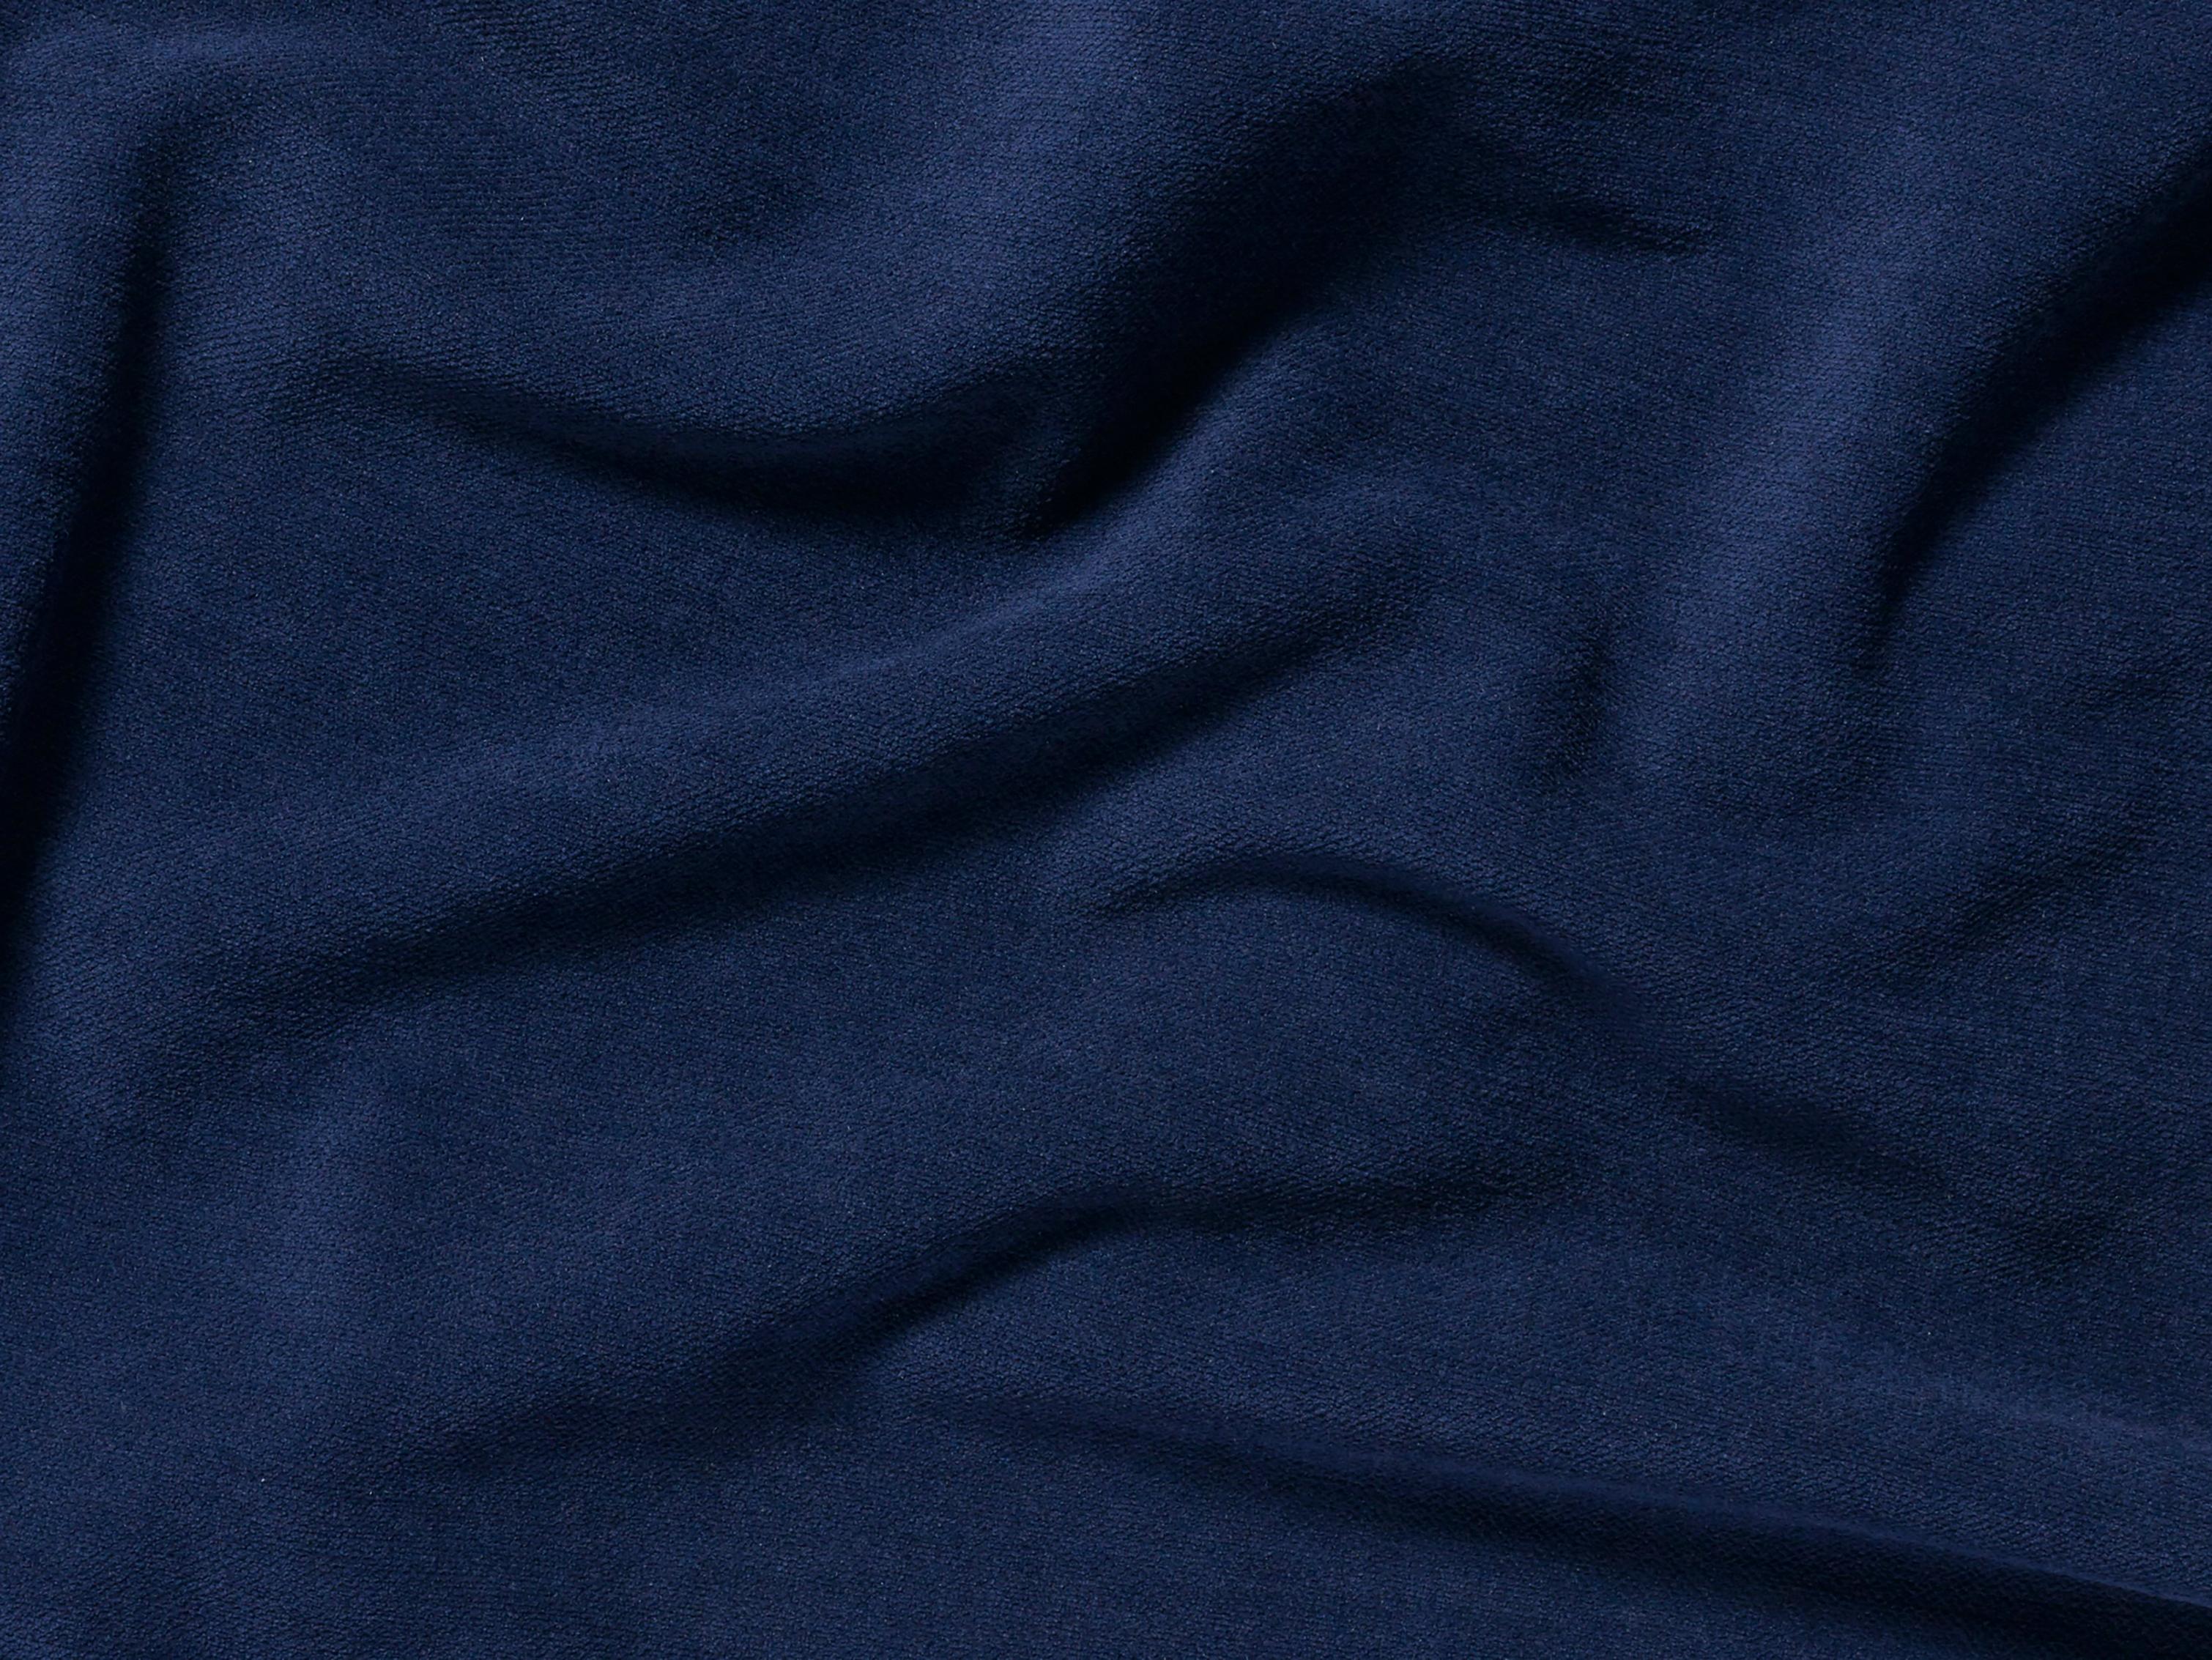 Muestra de material y color de Frisco azul marino 2959